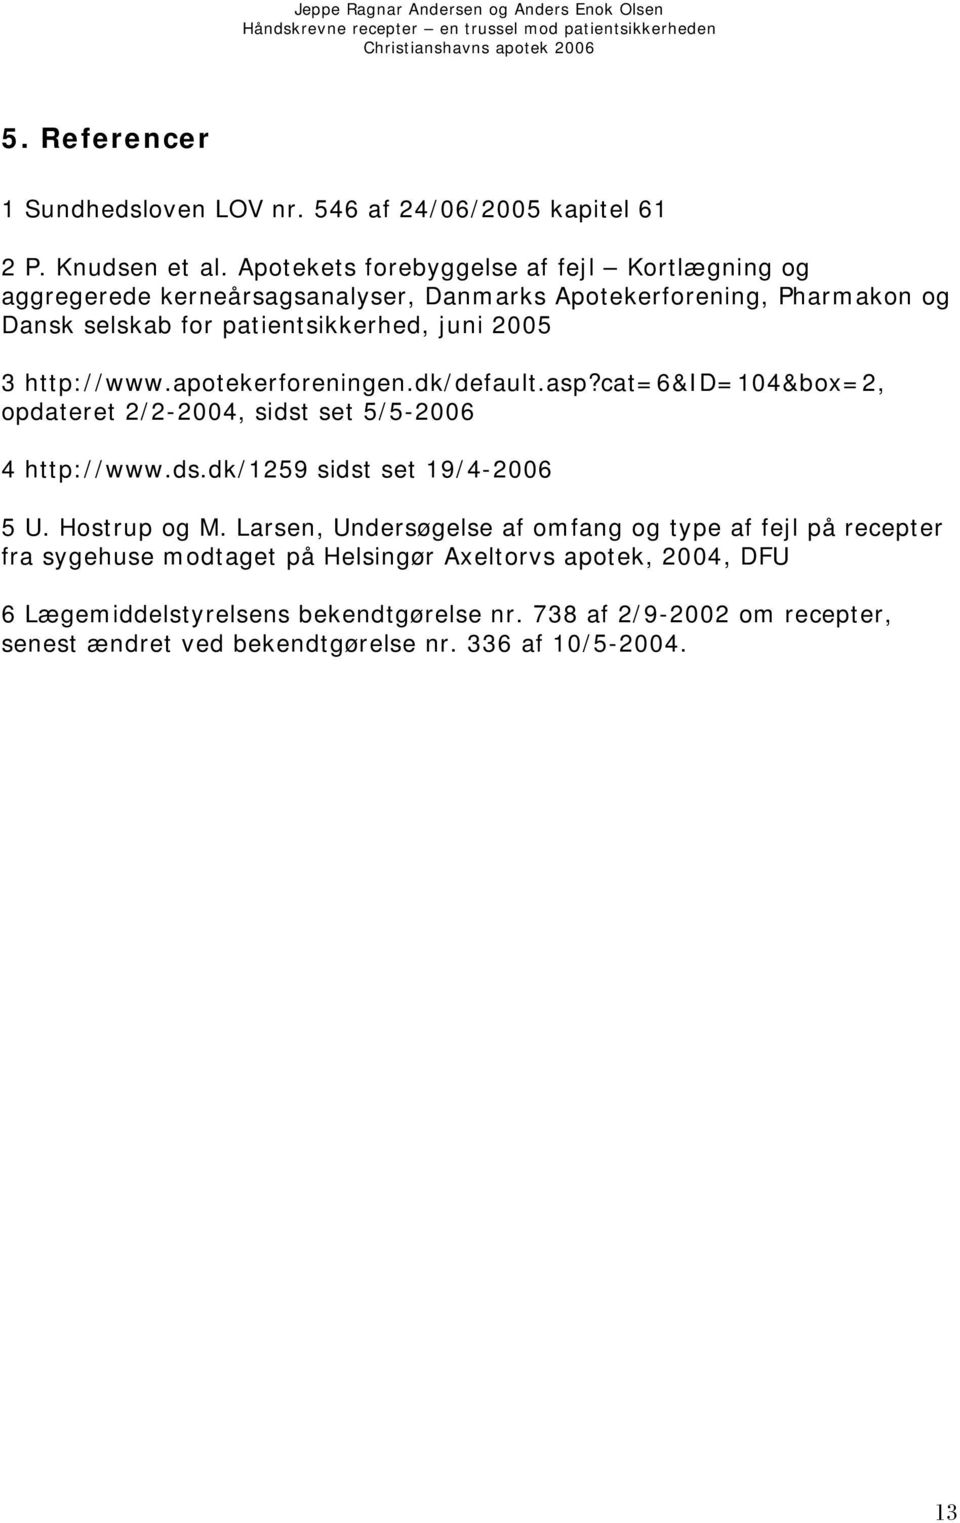 http://www.apotekerforeningen.dk/default.asp?cat=6&id=104&box=2, opdateret 2/2-2004, sidst set 5/5-2006 4 http://www.ds.dk/1259 sidst set 19/4-2006 5 U. Hostrup og M.